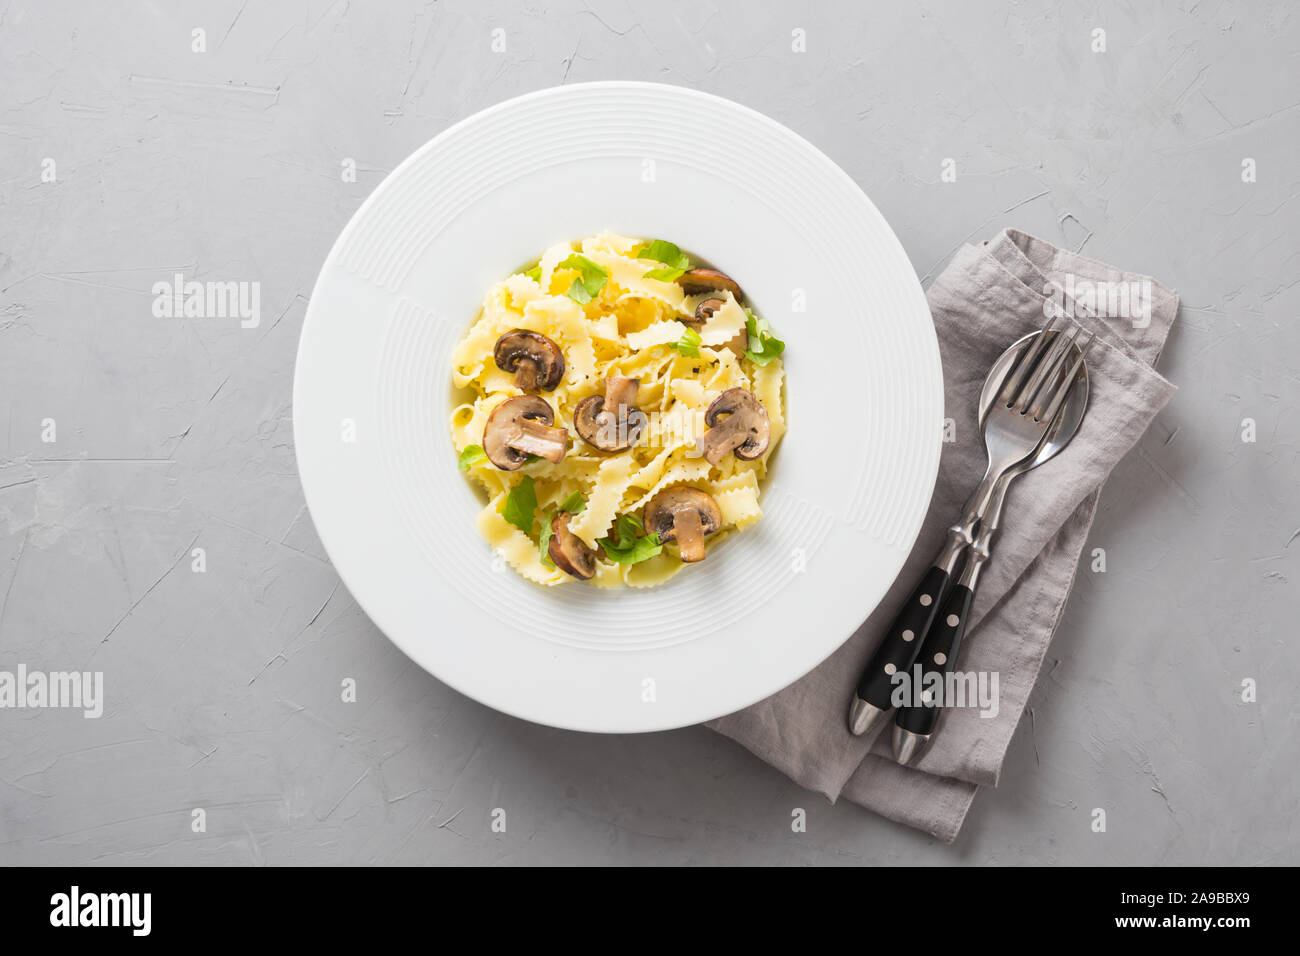 Reginelle Spaghetti pâtes aux champignons sur table en pierre grise. De savoureux repas sain. Vue de dessus. Banque D'Images